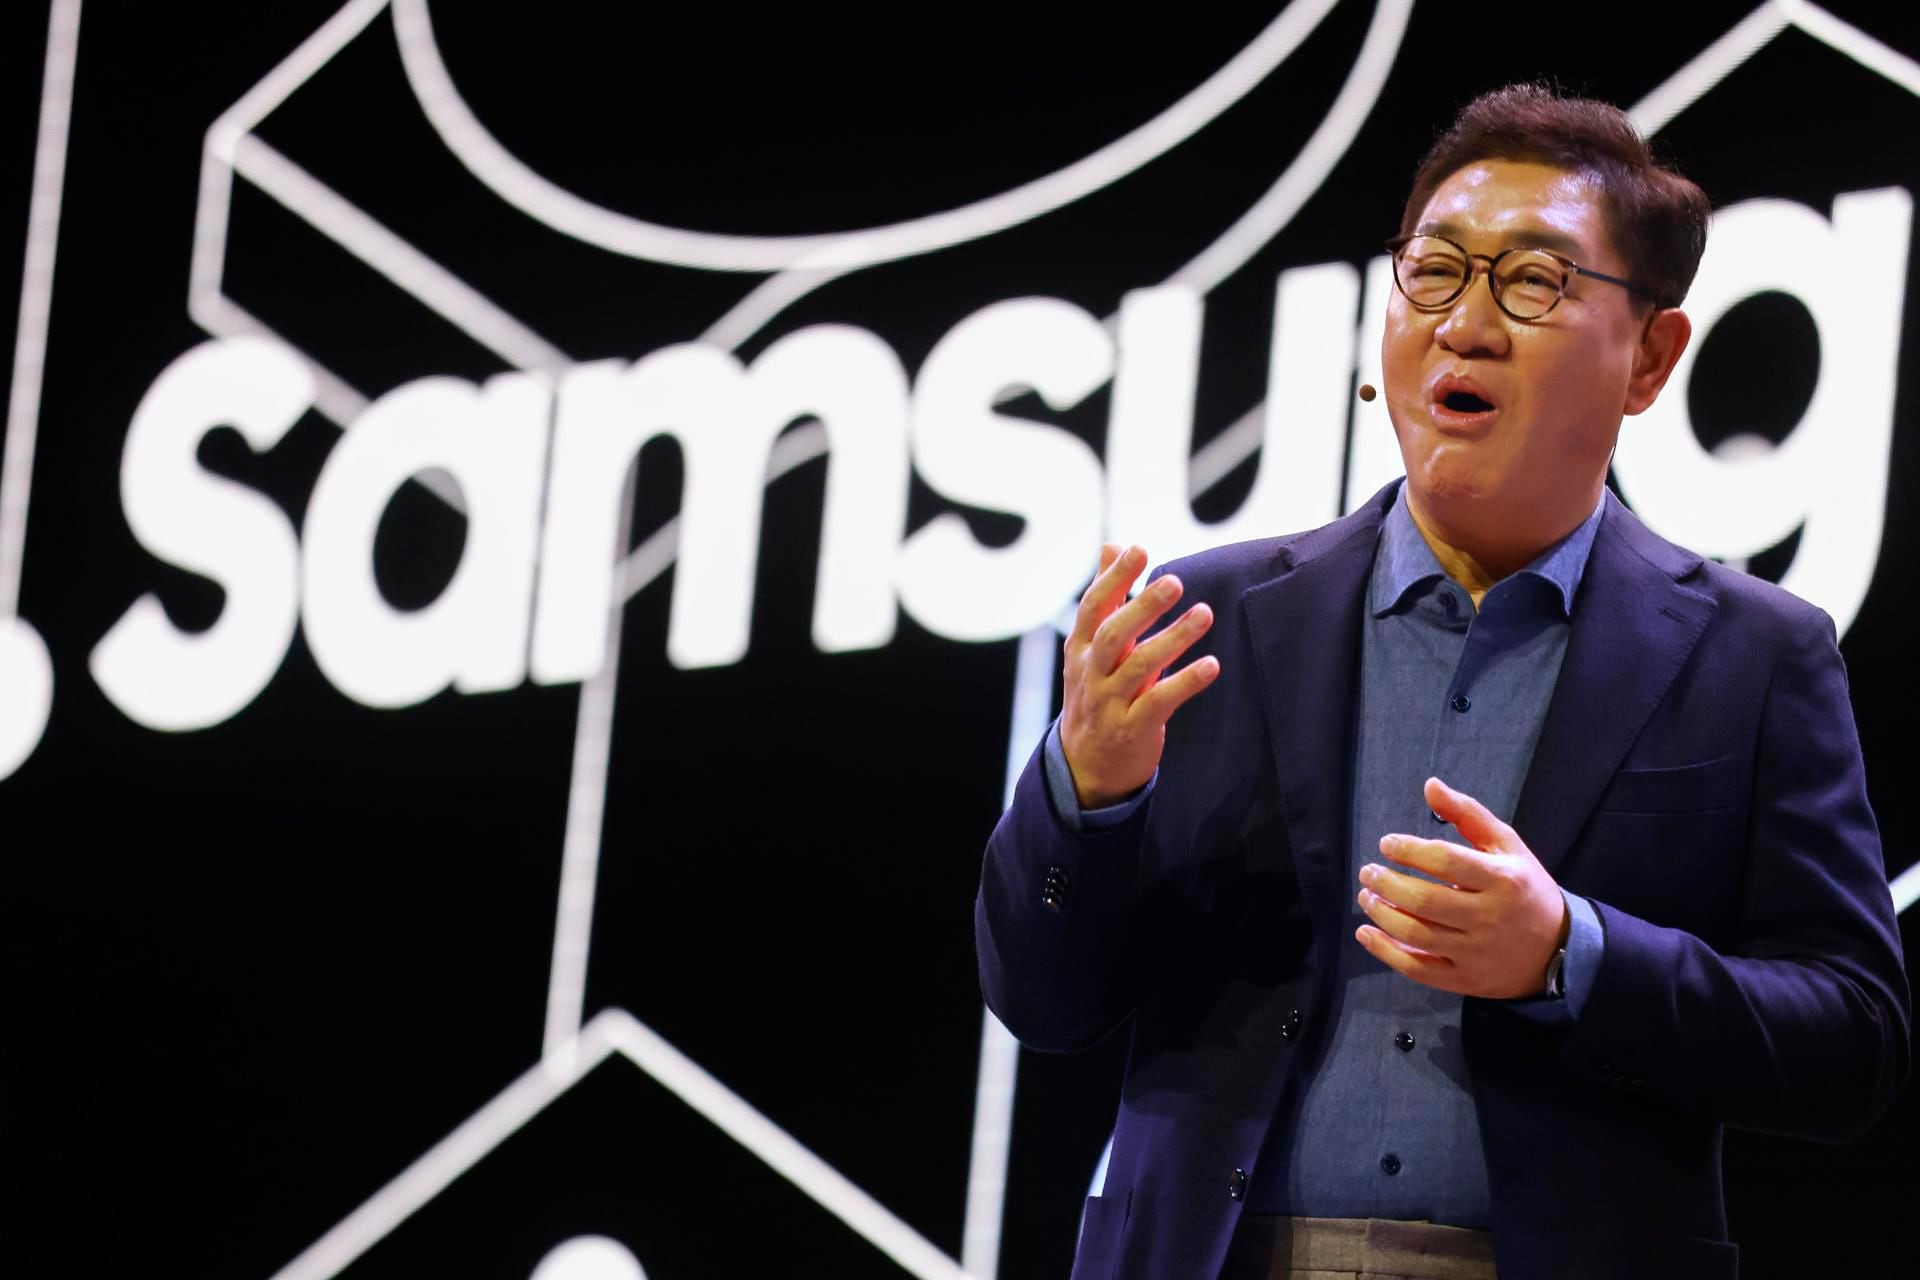 Jong-Hee (JH) Han, Vicepresidente, CEO y Jefe de la División de Experiencia de Dispositivos (DX) de Samsung